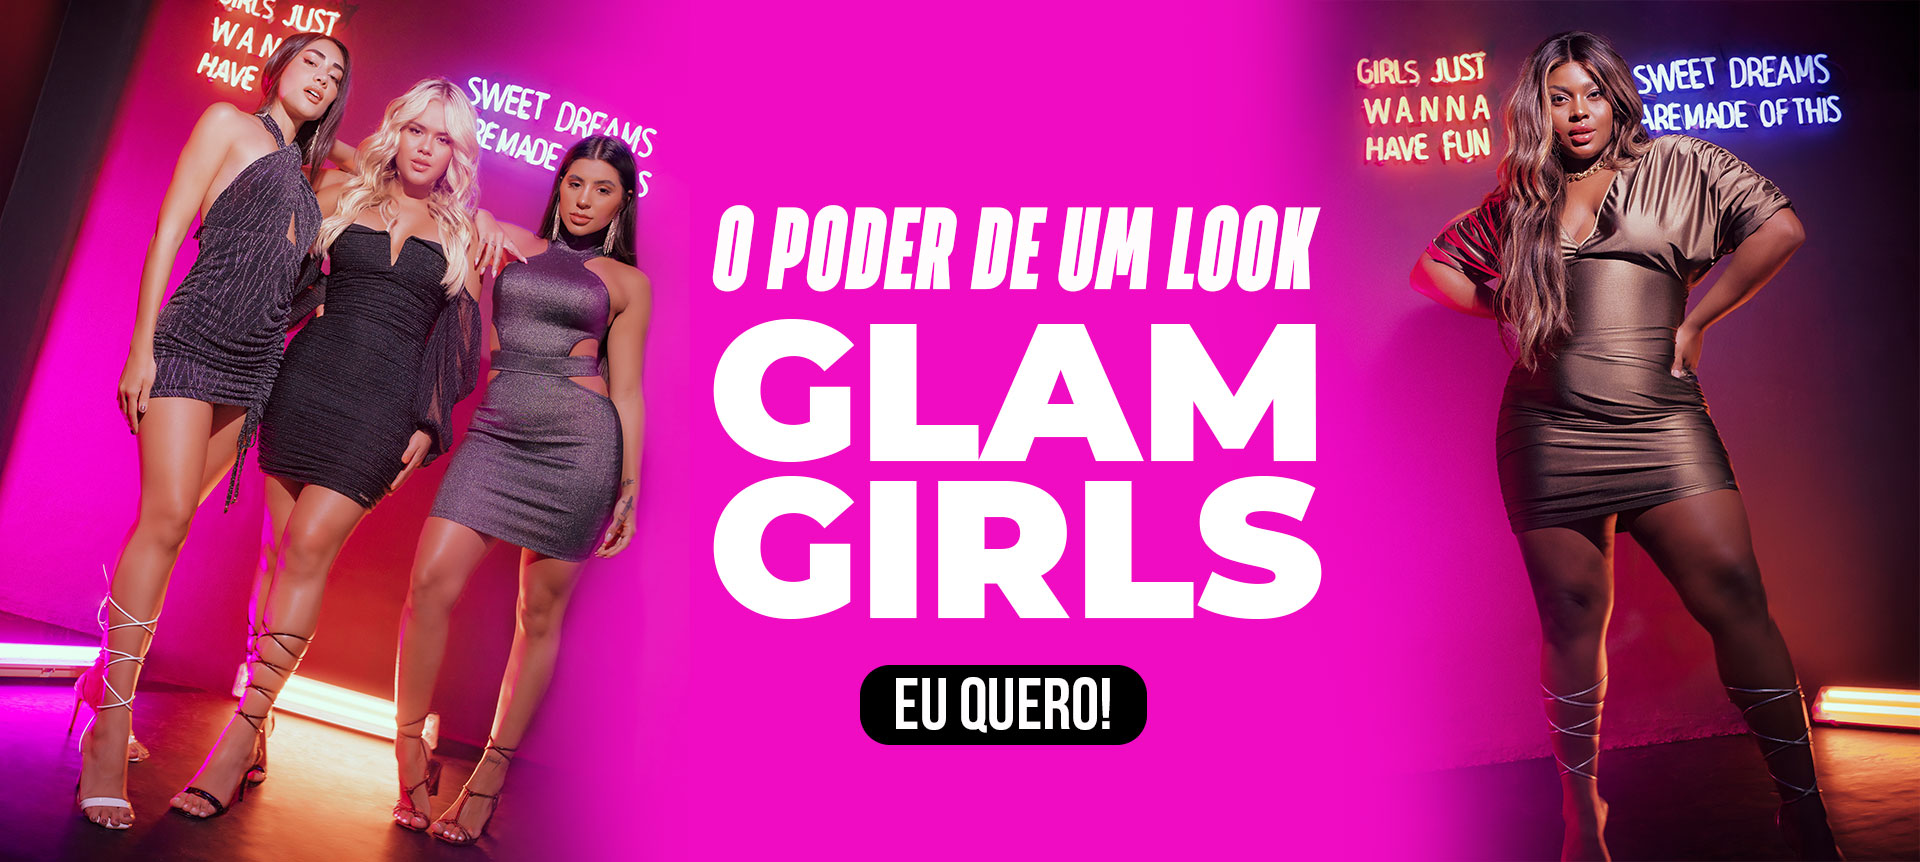 GLAM GIRLS 2